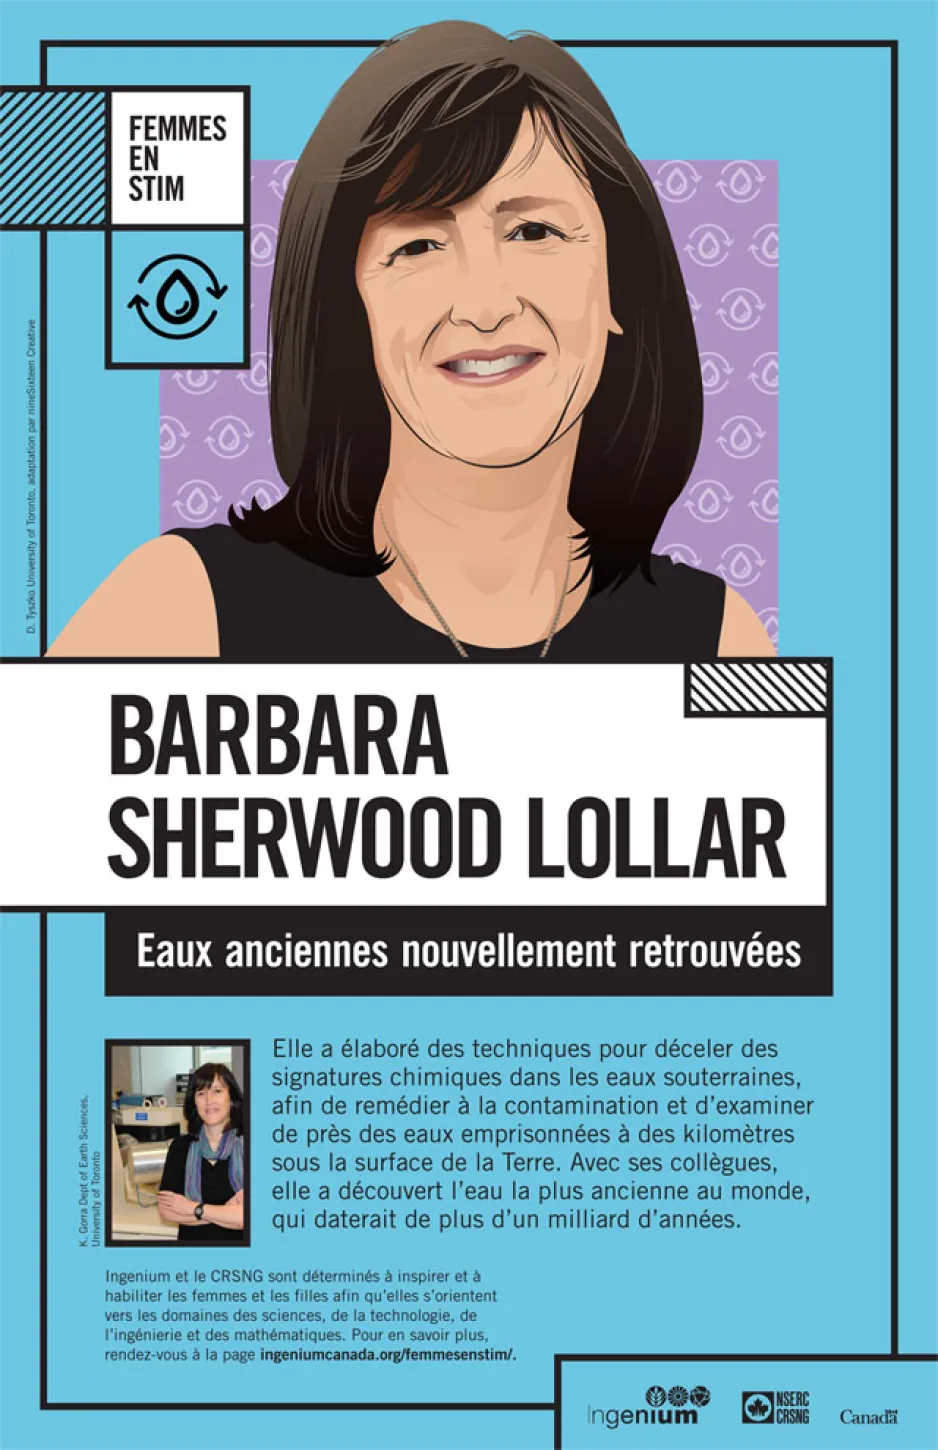 Une image graphique d’une femme, sur fond bleu. Le texte se lit comme suit : « Barbara Sherwood Lollar : Eau ancienne. Nouvelles découvertes ».